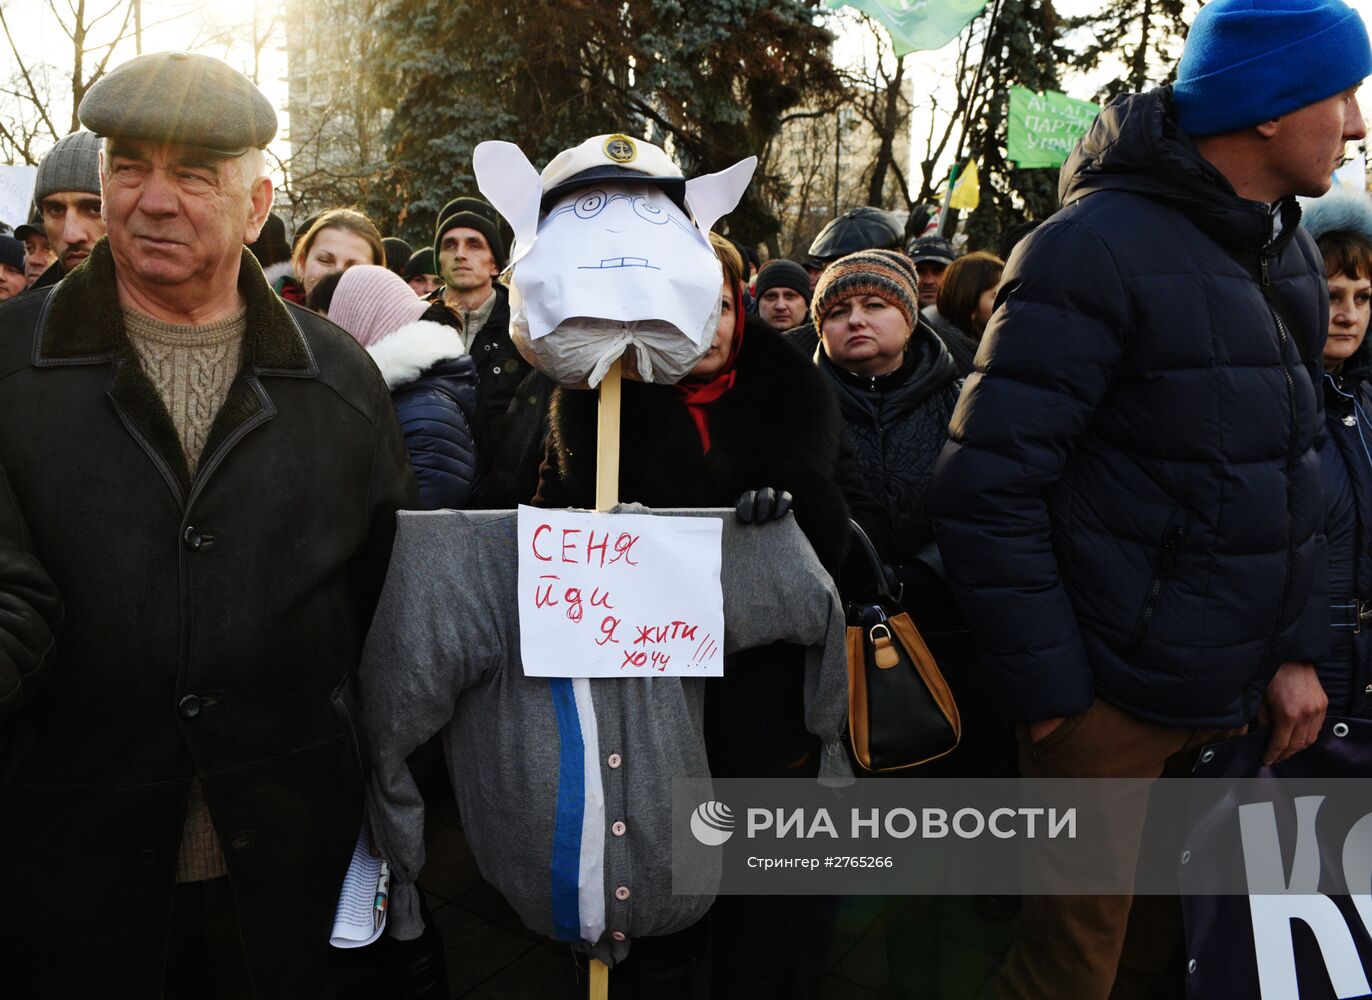 Всеукраинская аграрная забастовка под лозунгом: "Не дадим уничтожить Украину! Нет села - нет государства!"